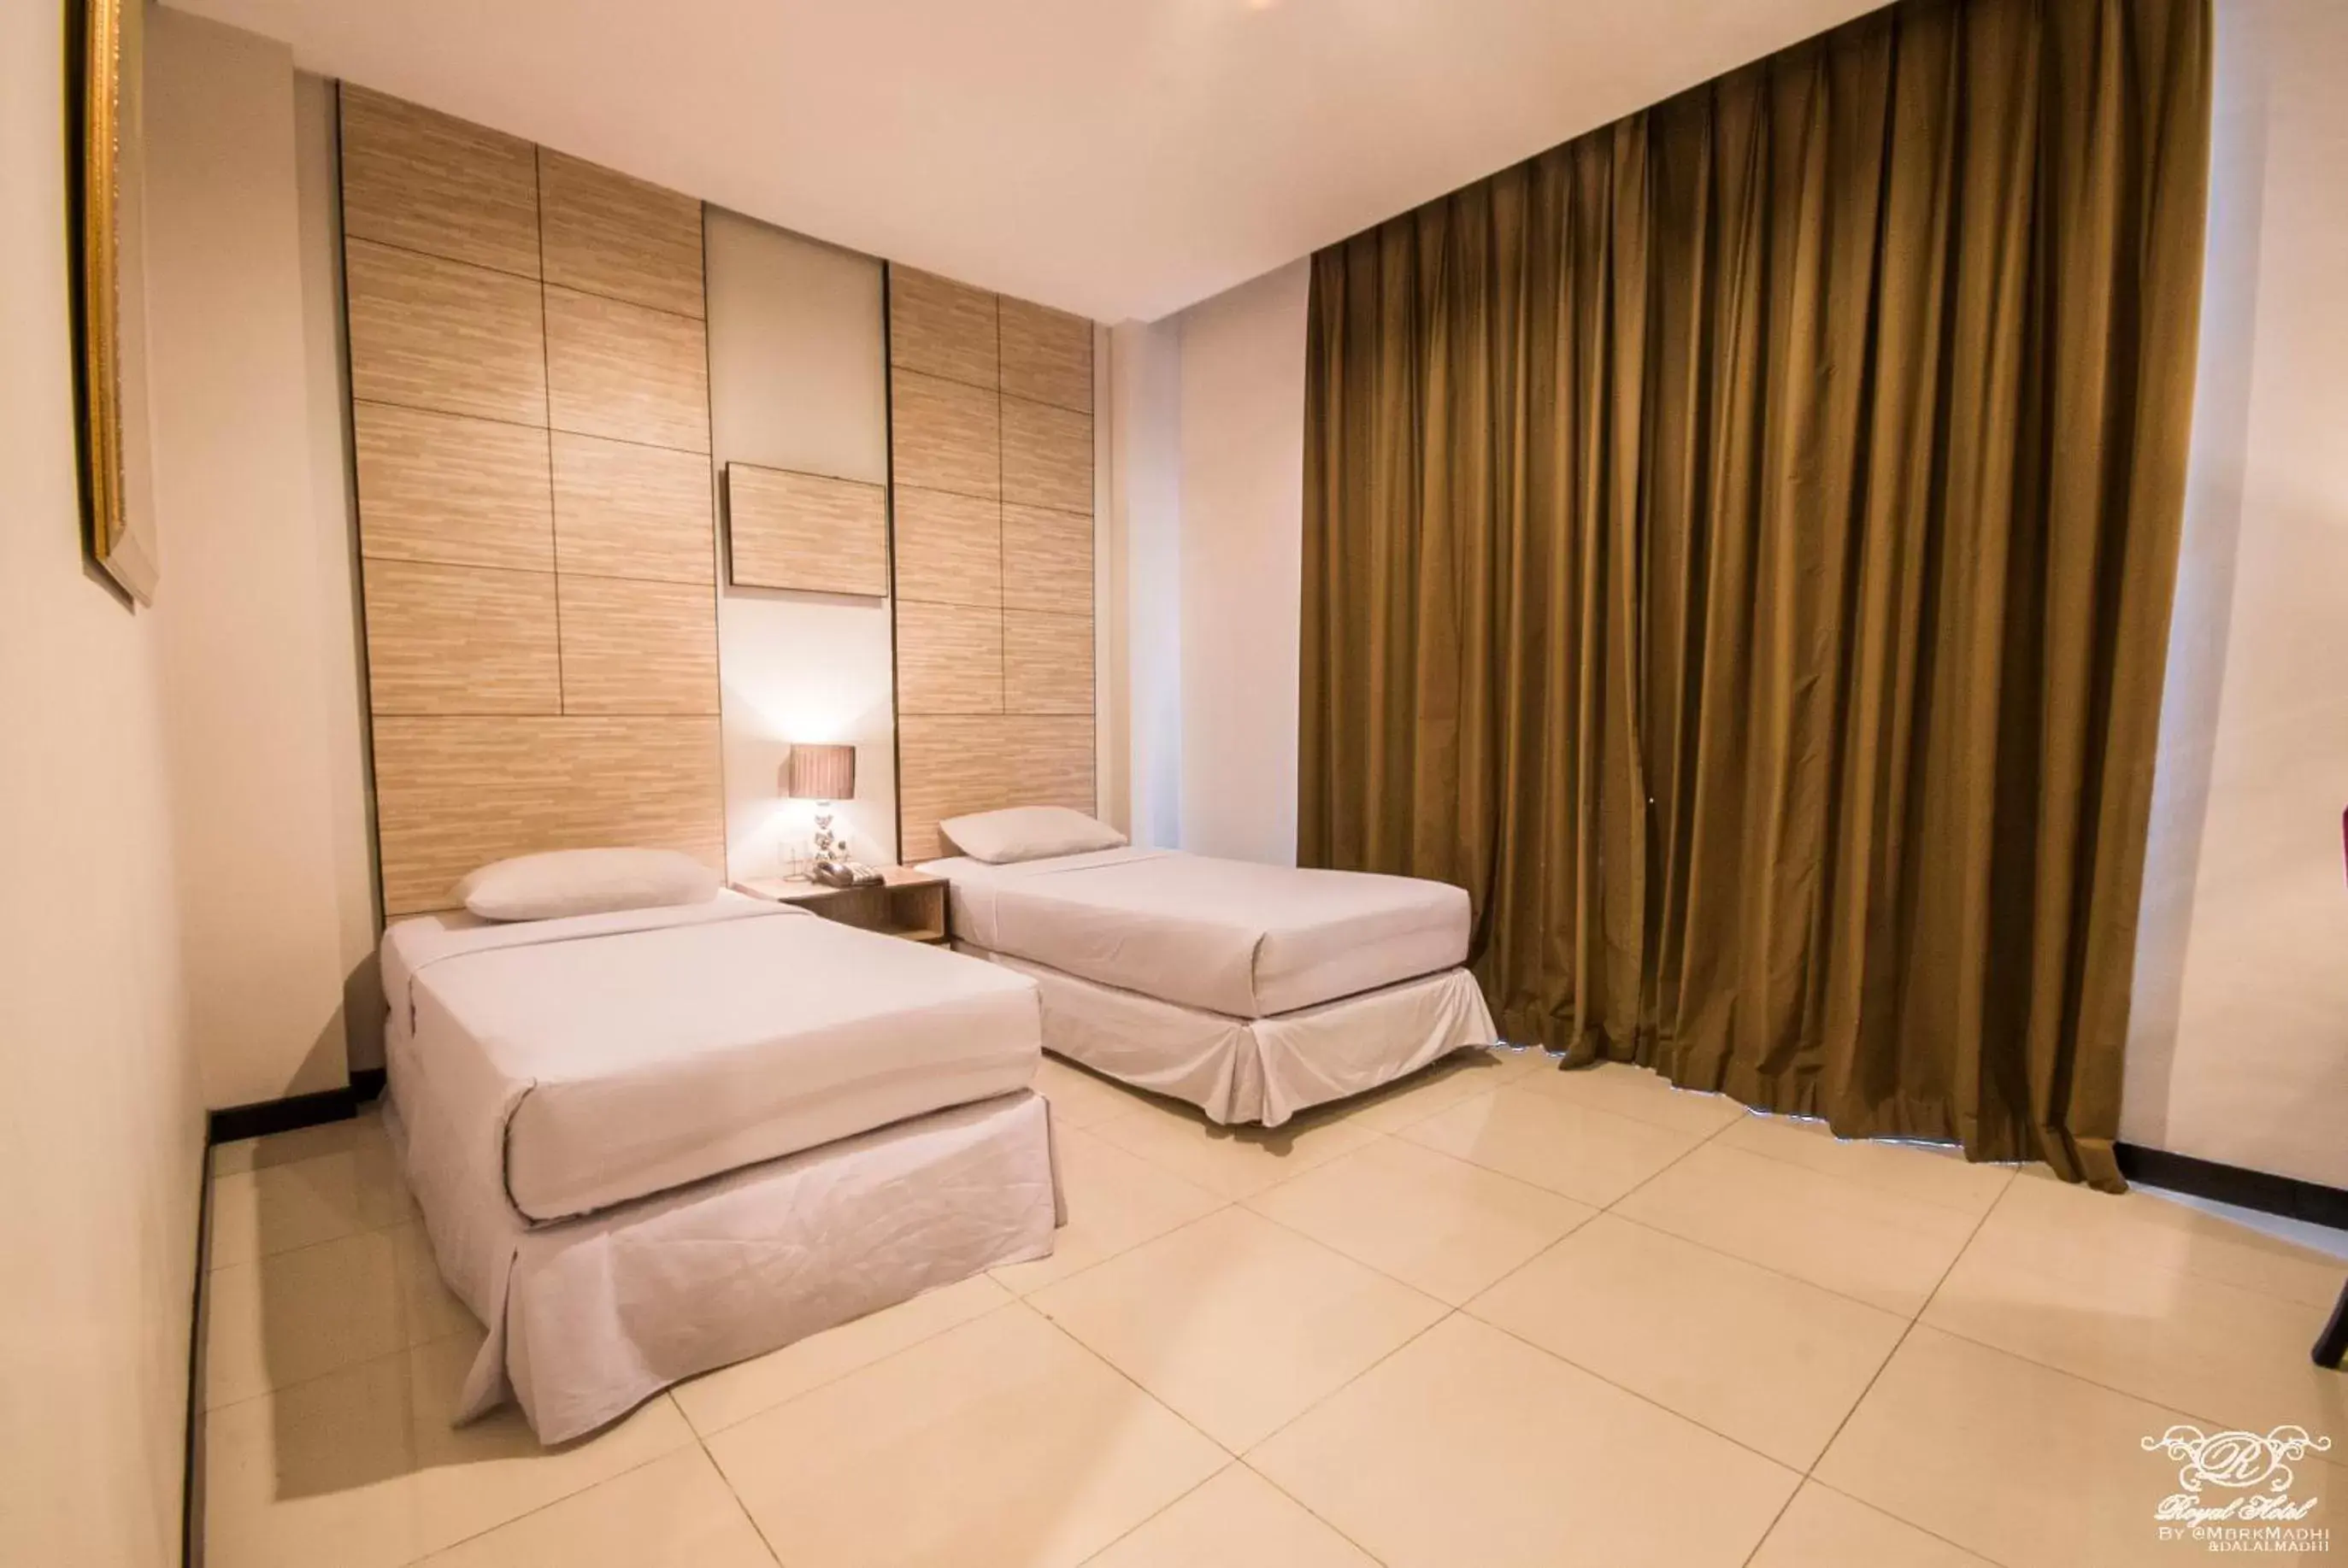 Bed in Royal Hotel Bogor